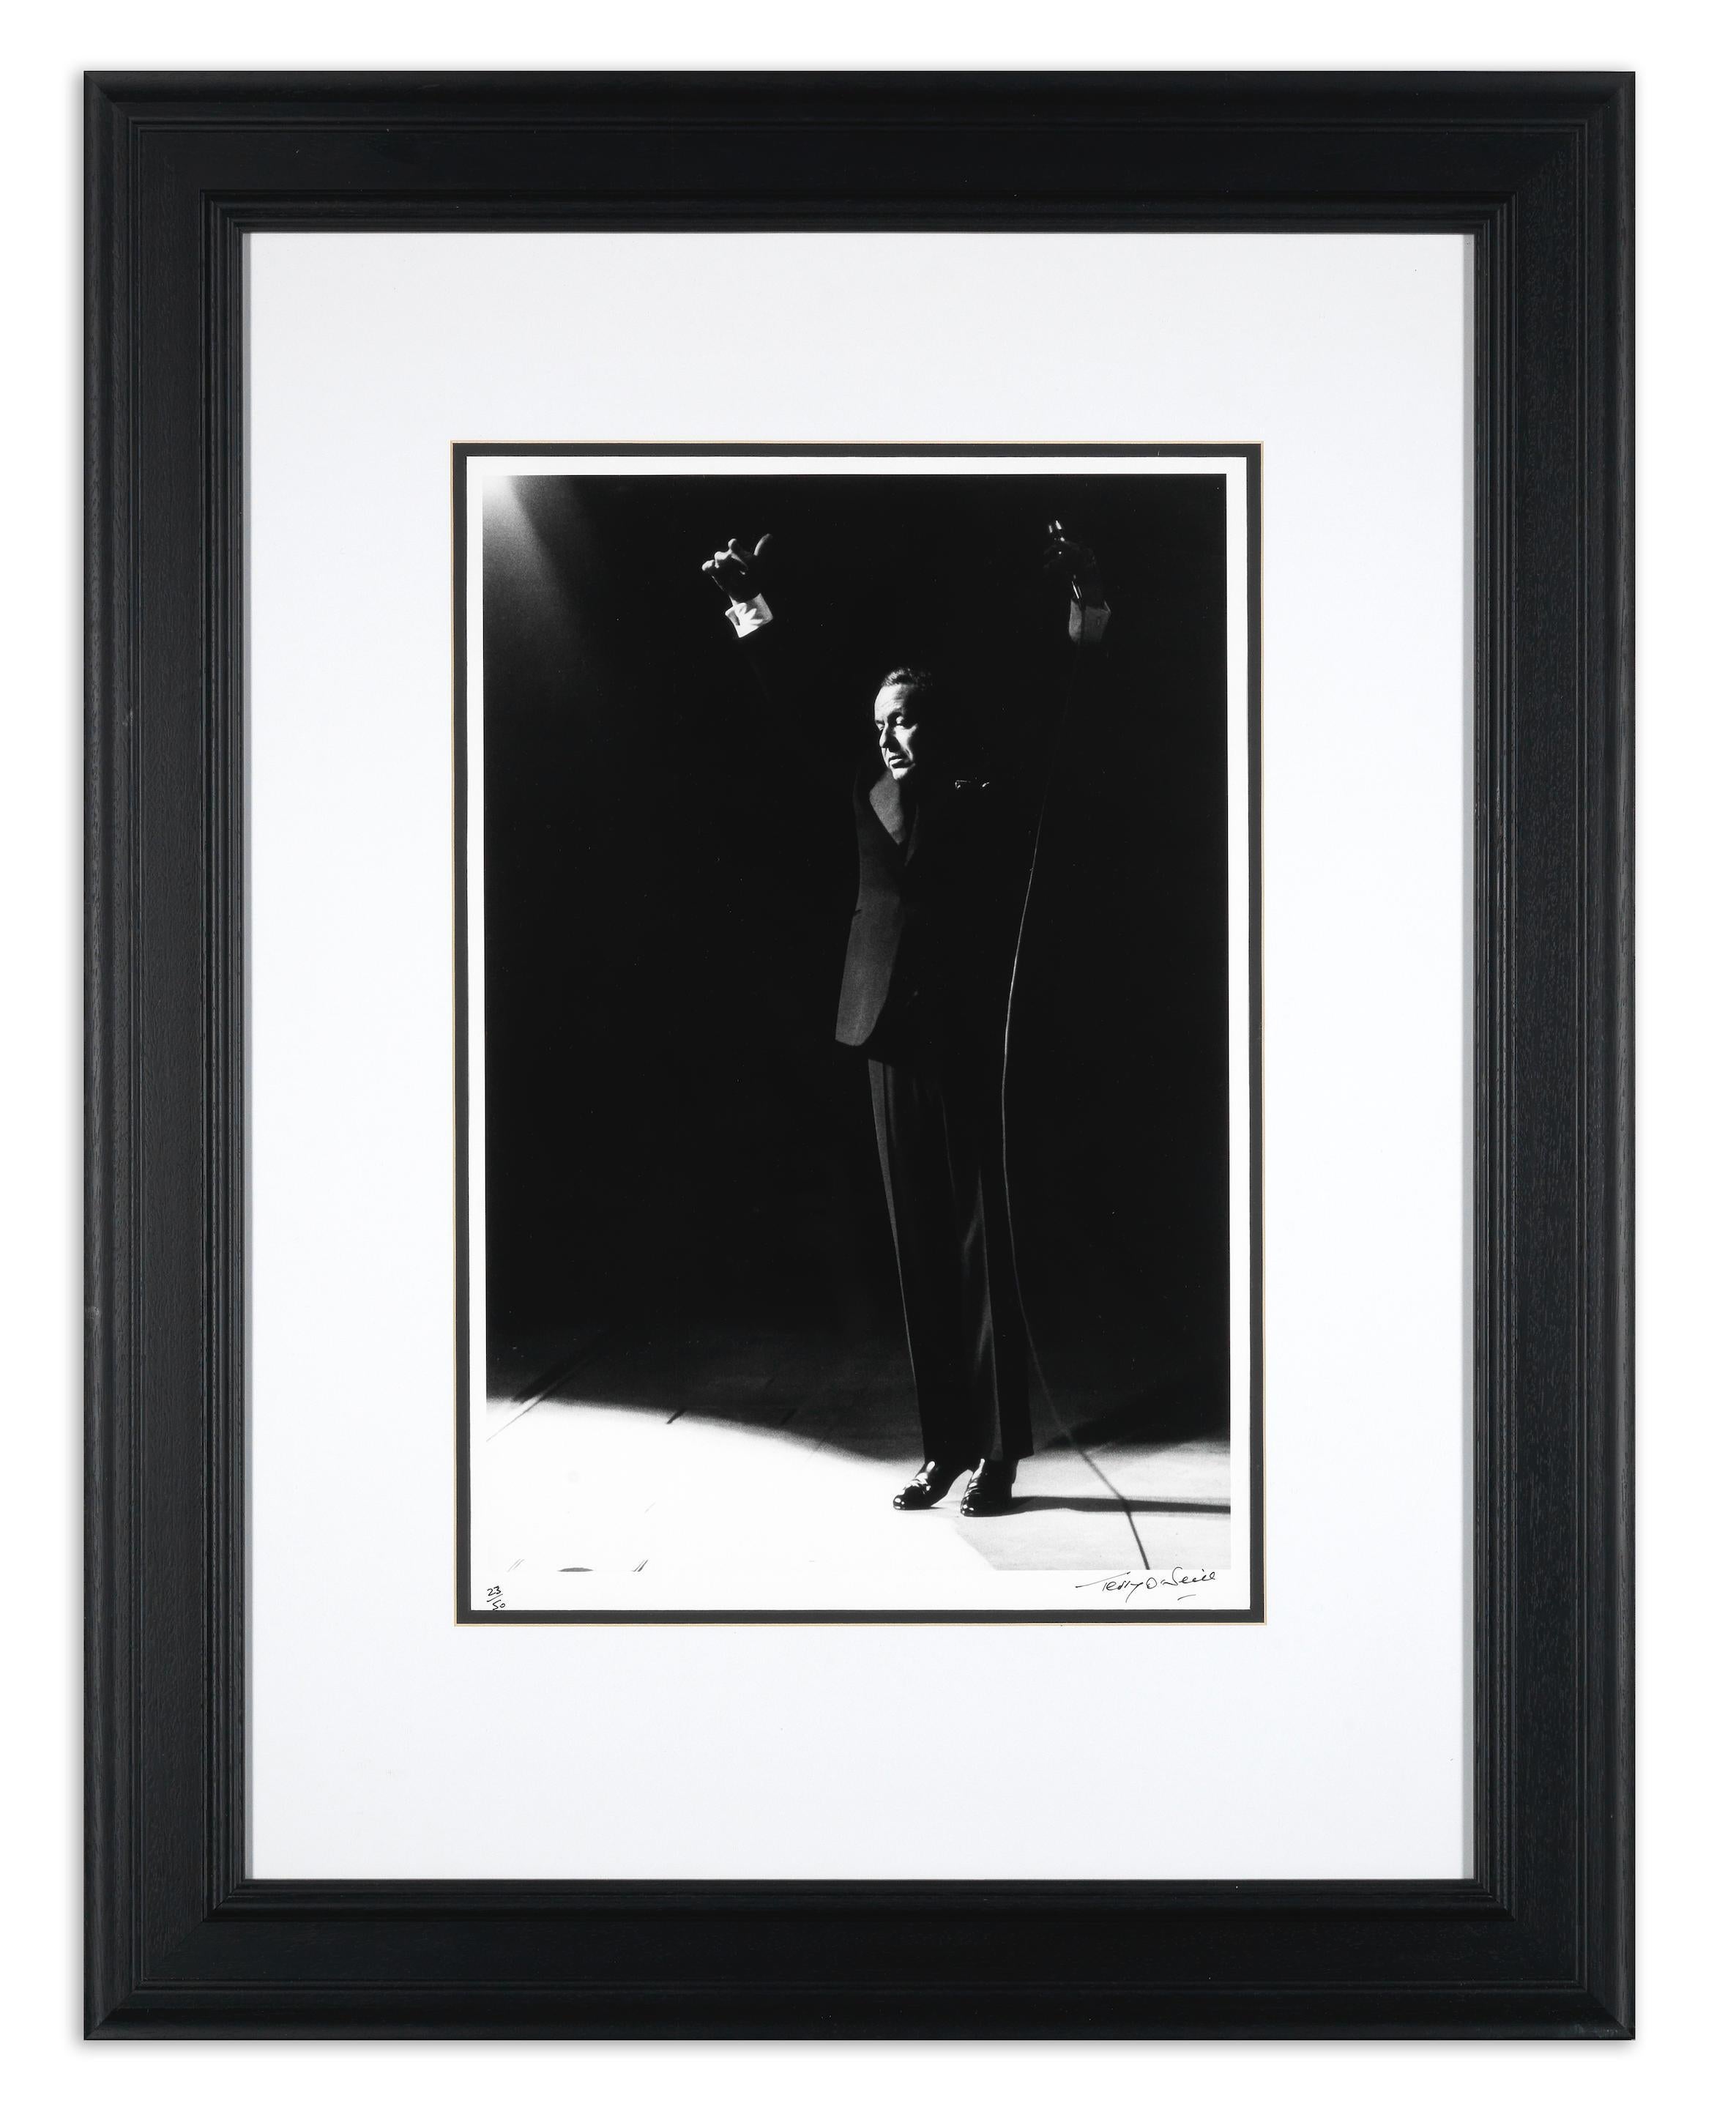 Dieses Foto zeigt den berühmten Frank Sinatra bei einem Bühnenauftritt in London, der von Terry O'Neill in einer mittlerweile ikonischen Aufnahme festgehalten wurde. Die Komposition ist bemerkenswert, denn die Silhouette des Mikrofons wird durch das